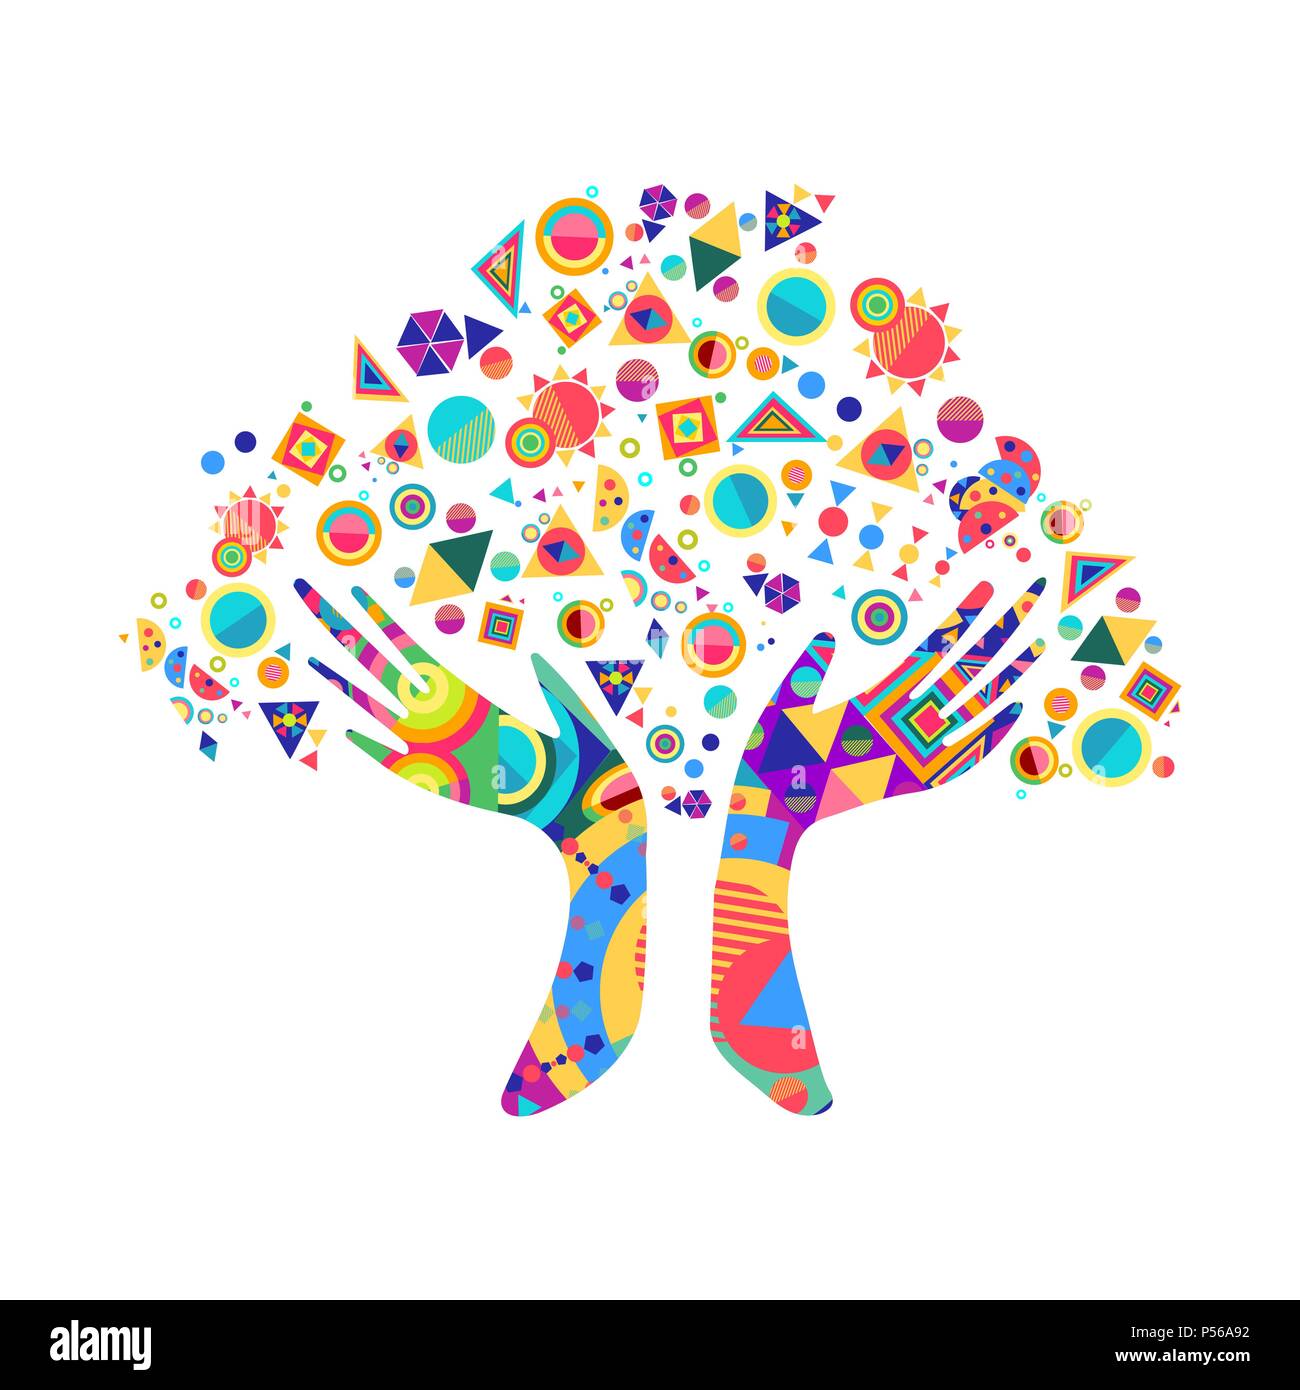 Arbre avec des couleurs les mains ensemble. L'équipe communautaire concept illustration pour la diversité de la culture, de la nature ou de soins d'équipe projet. Vecteur EPS10. Illustration de Vecteur